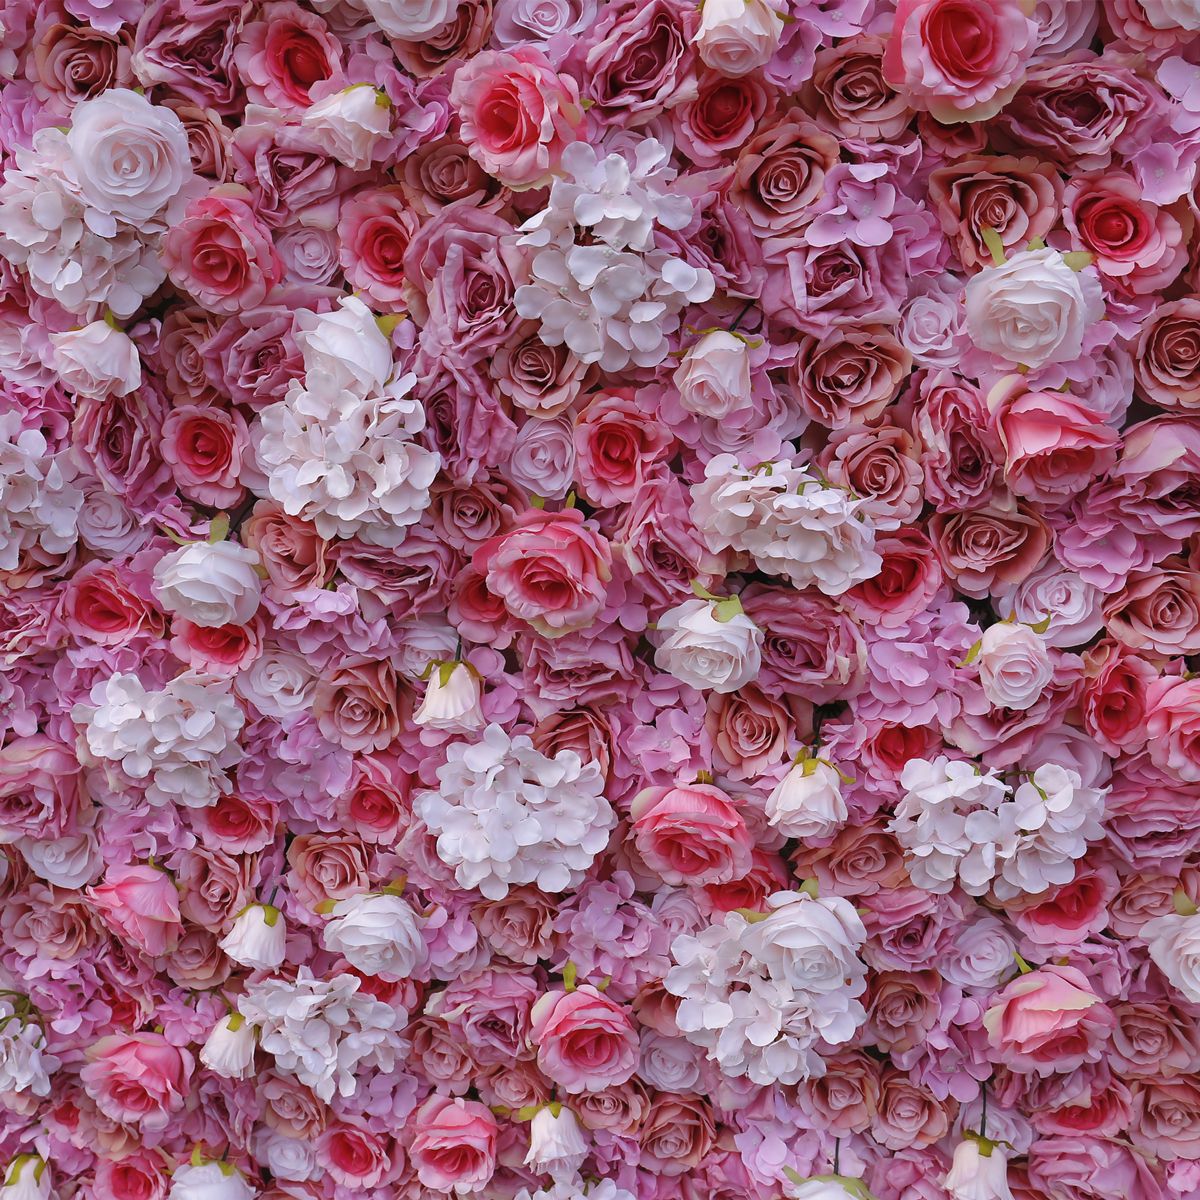  Wedding Fabric Bottom Simulation Flower Wall Background Wall Film Studio Background Silk Flower Row Plant Wall Flower Wall 